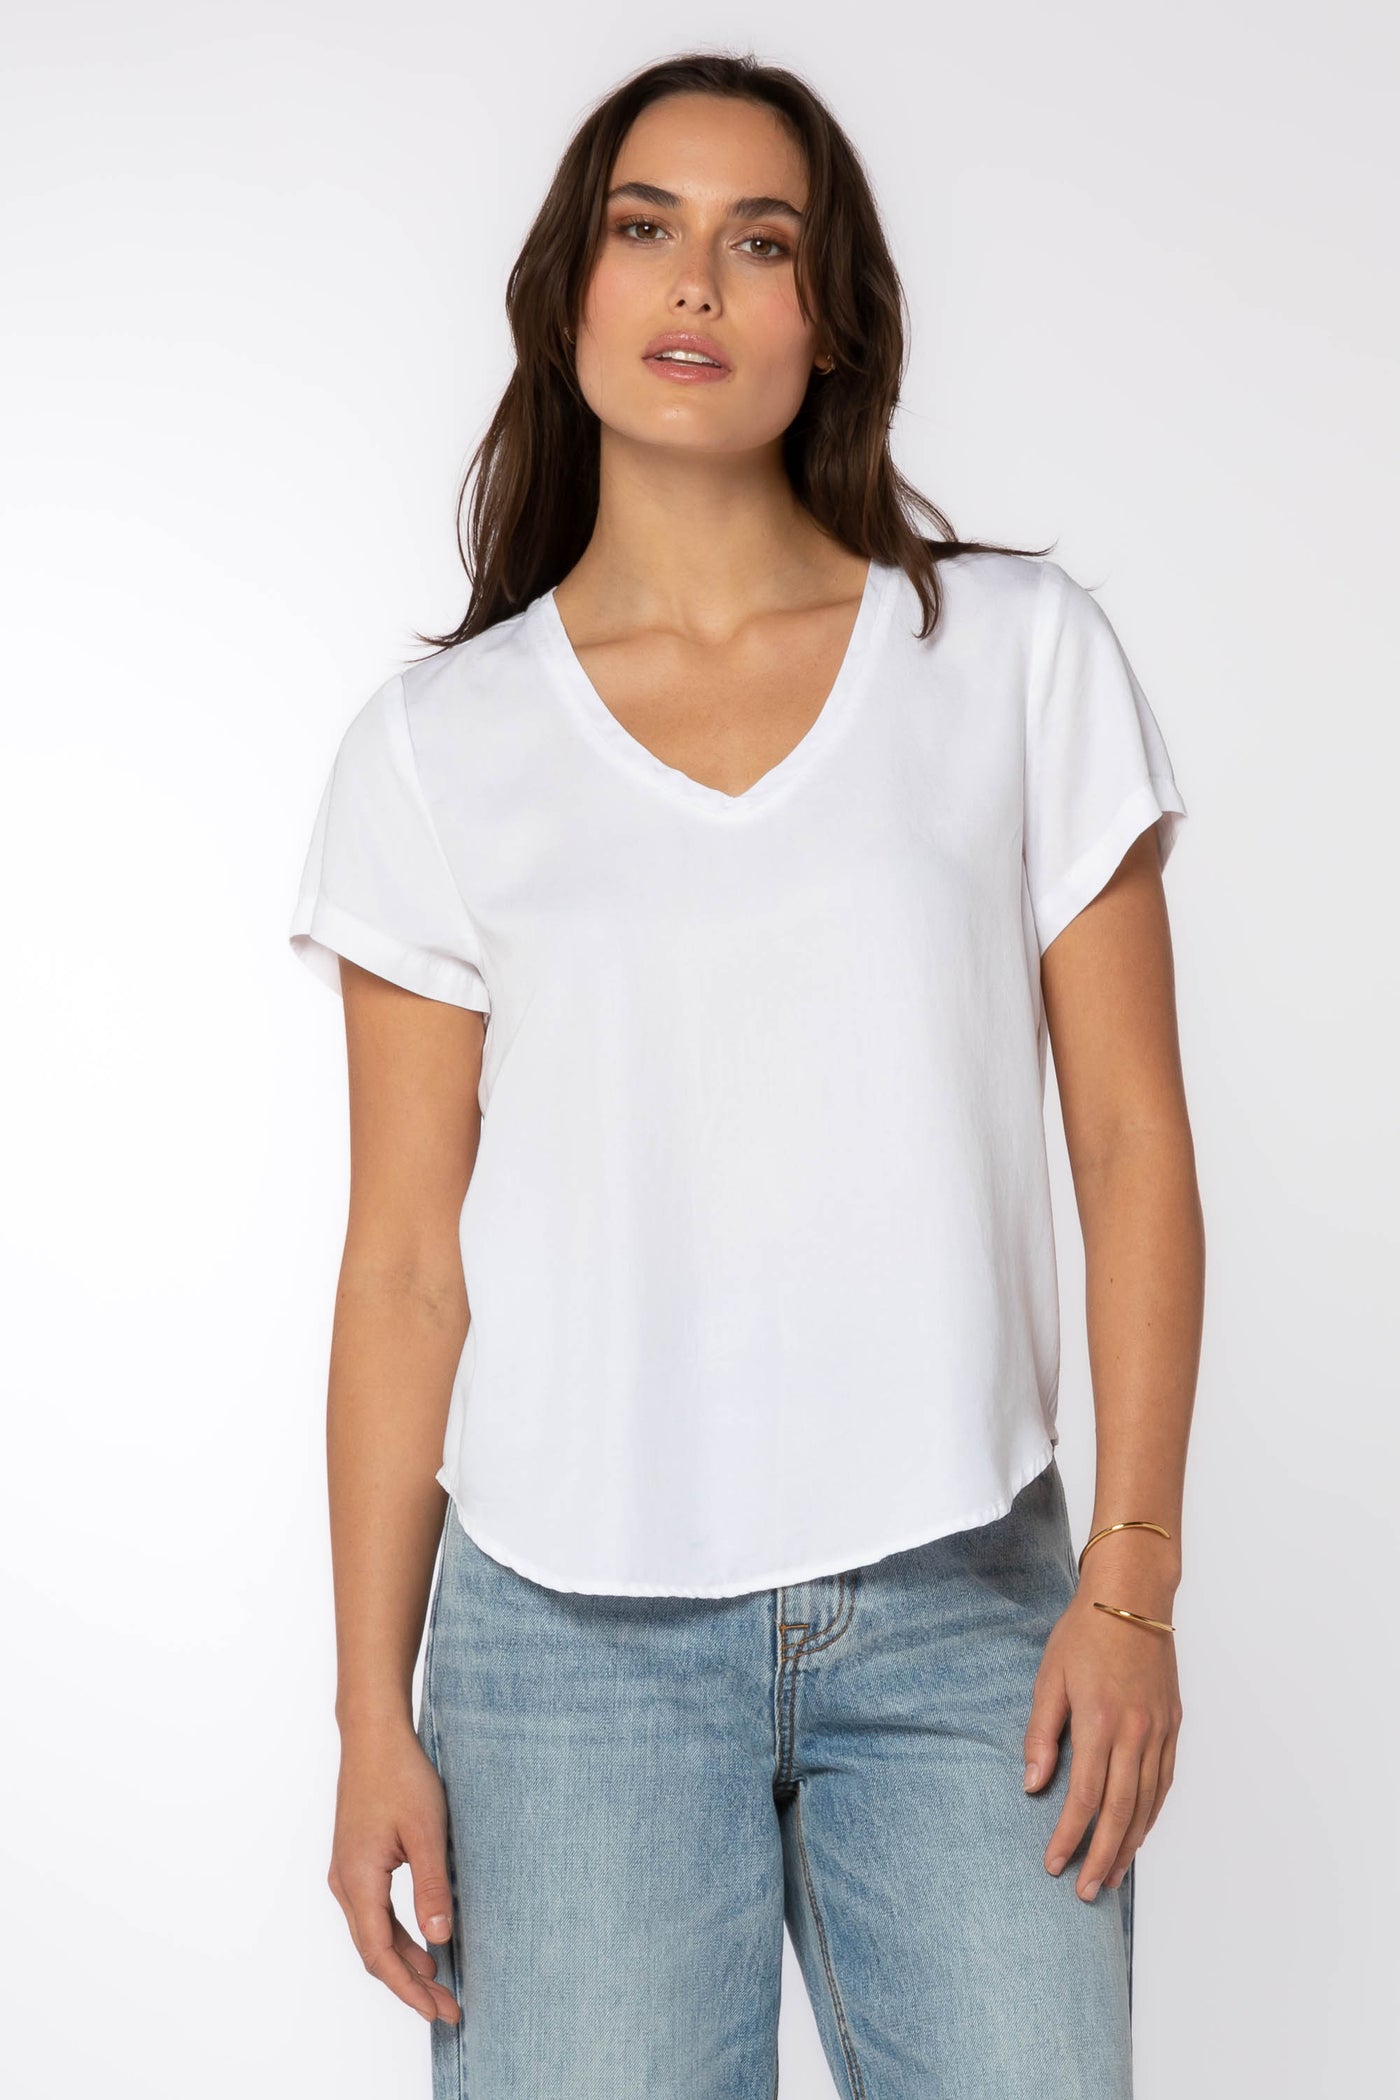 Lanelle Shirt - Tops - Velvet Heart Clothing